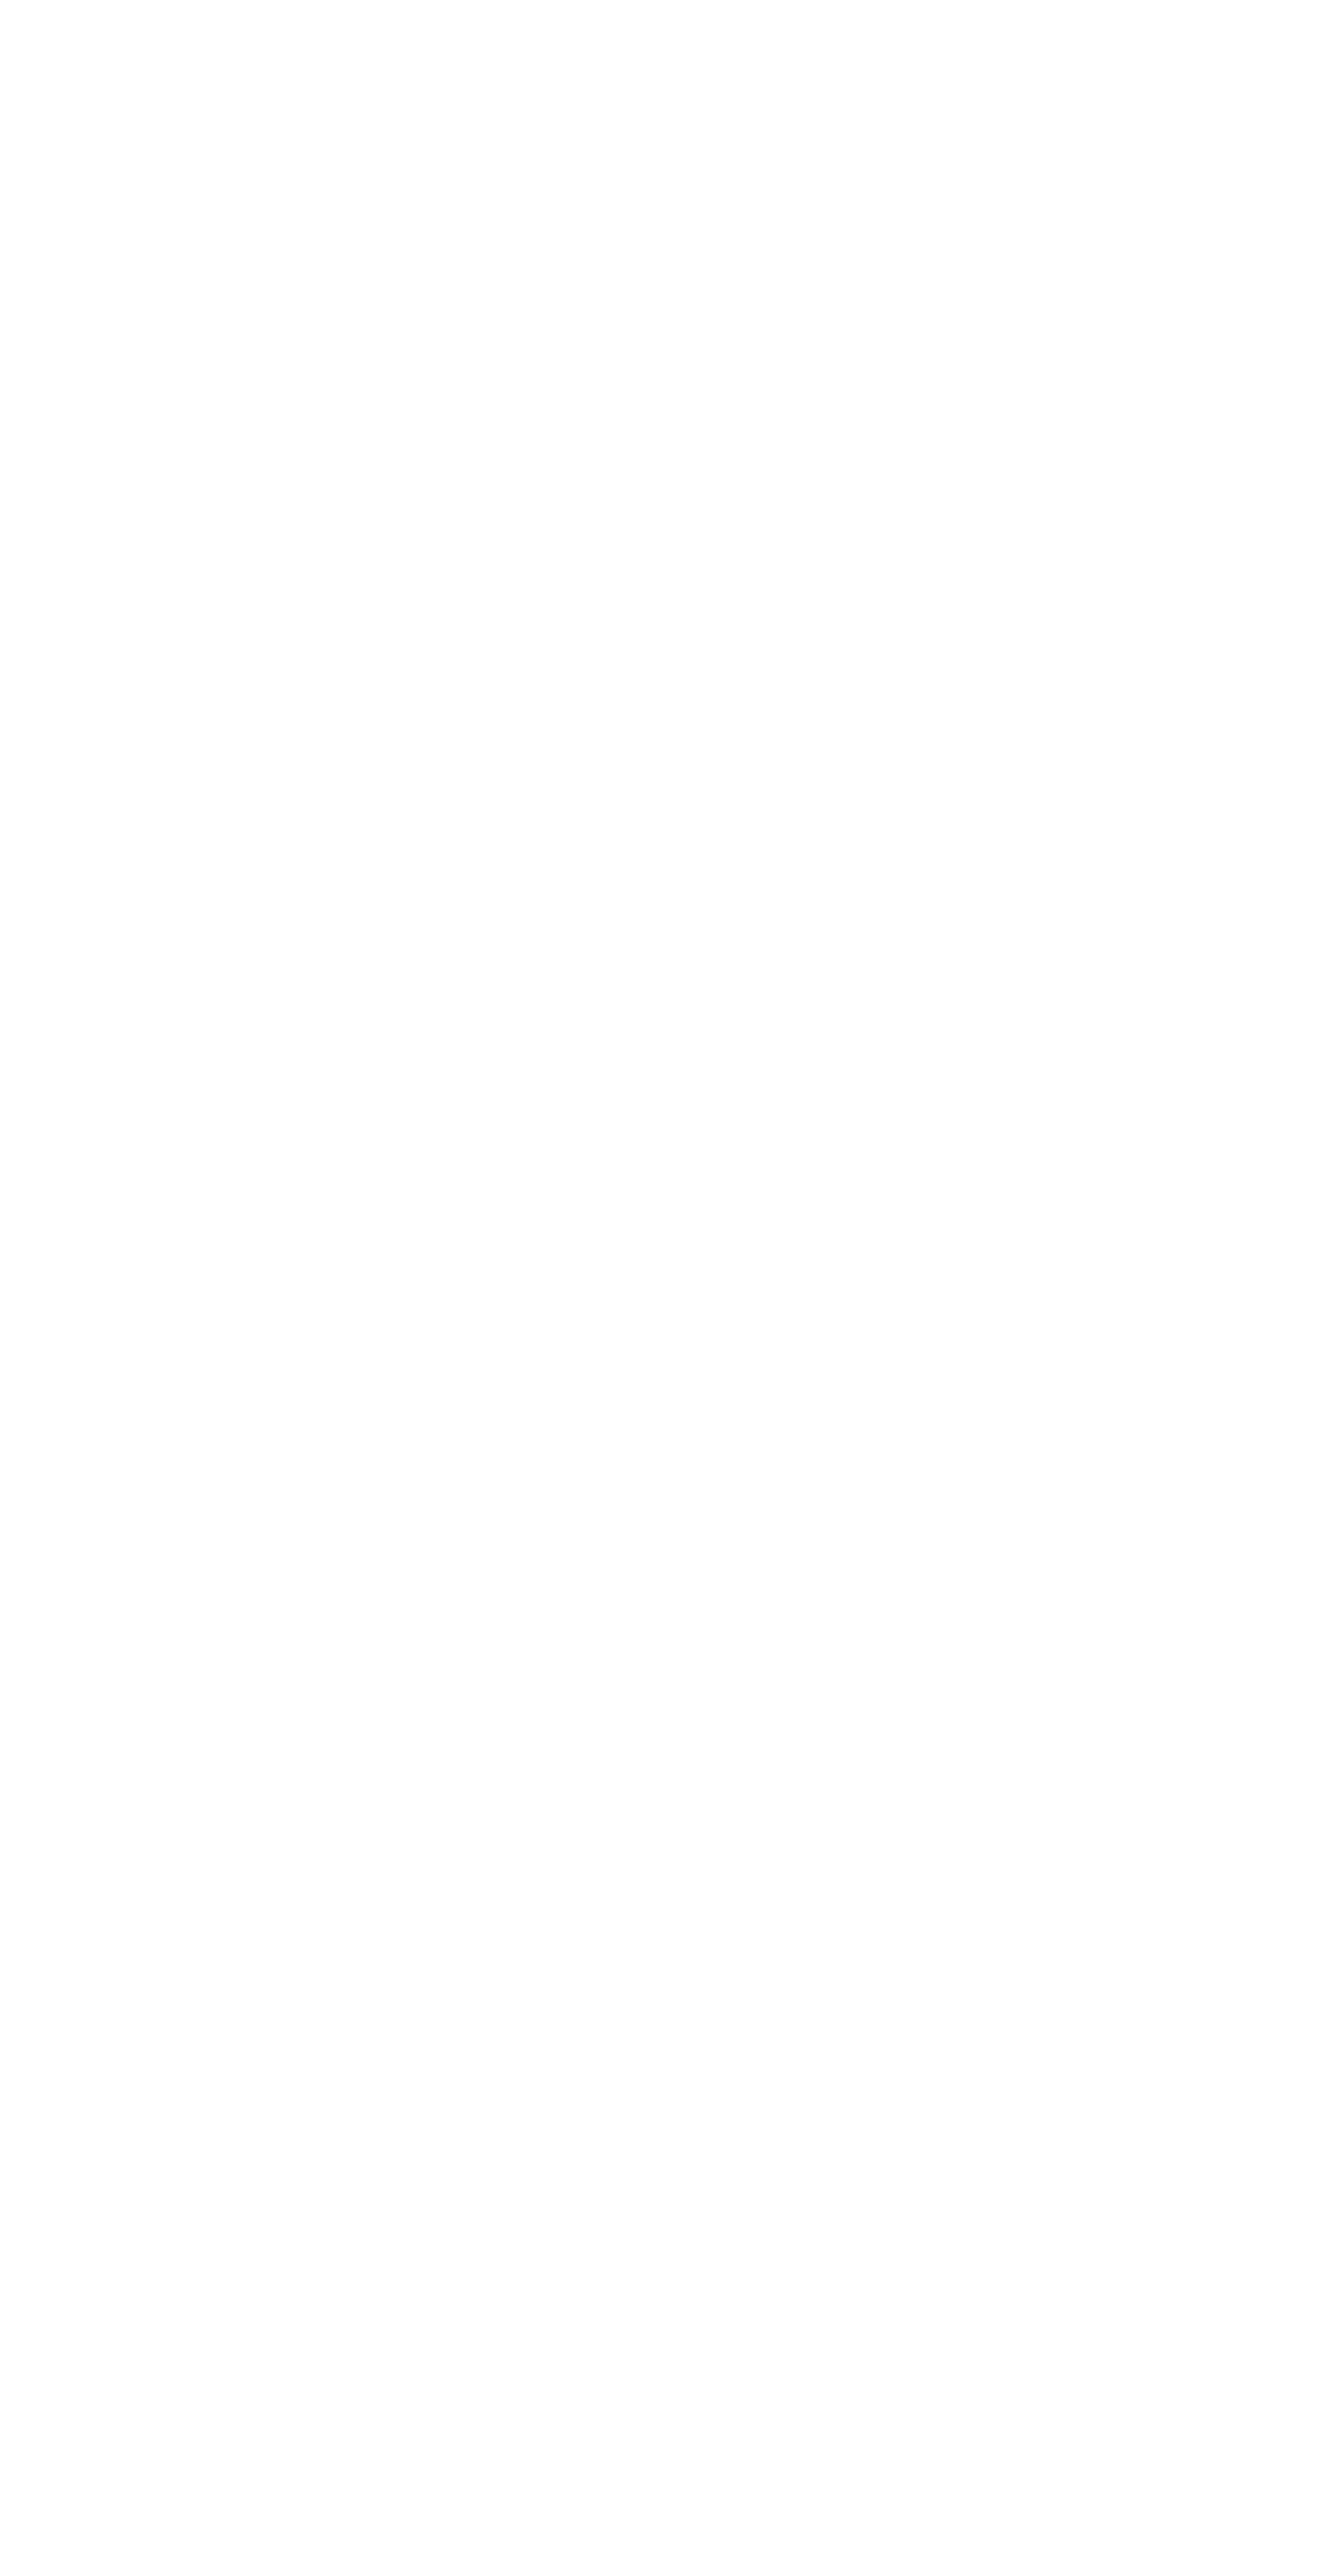 Logo des StuRa HTW Dresden, Bild- und Wortmarke in vertikaler Ausrichtung, 2748x5267 px